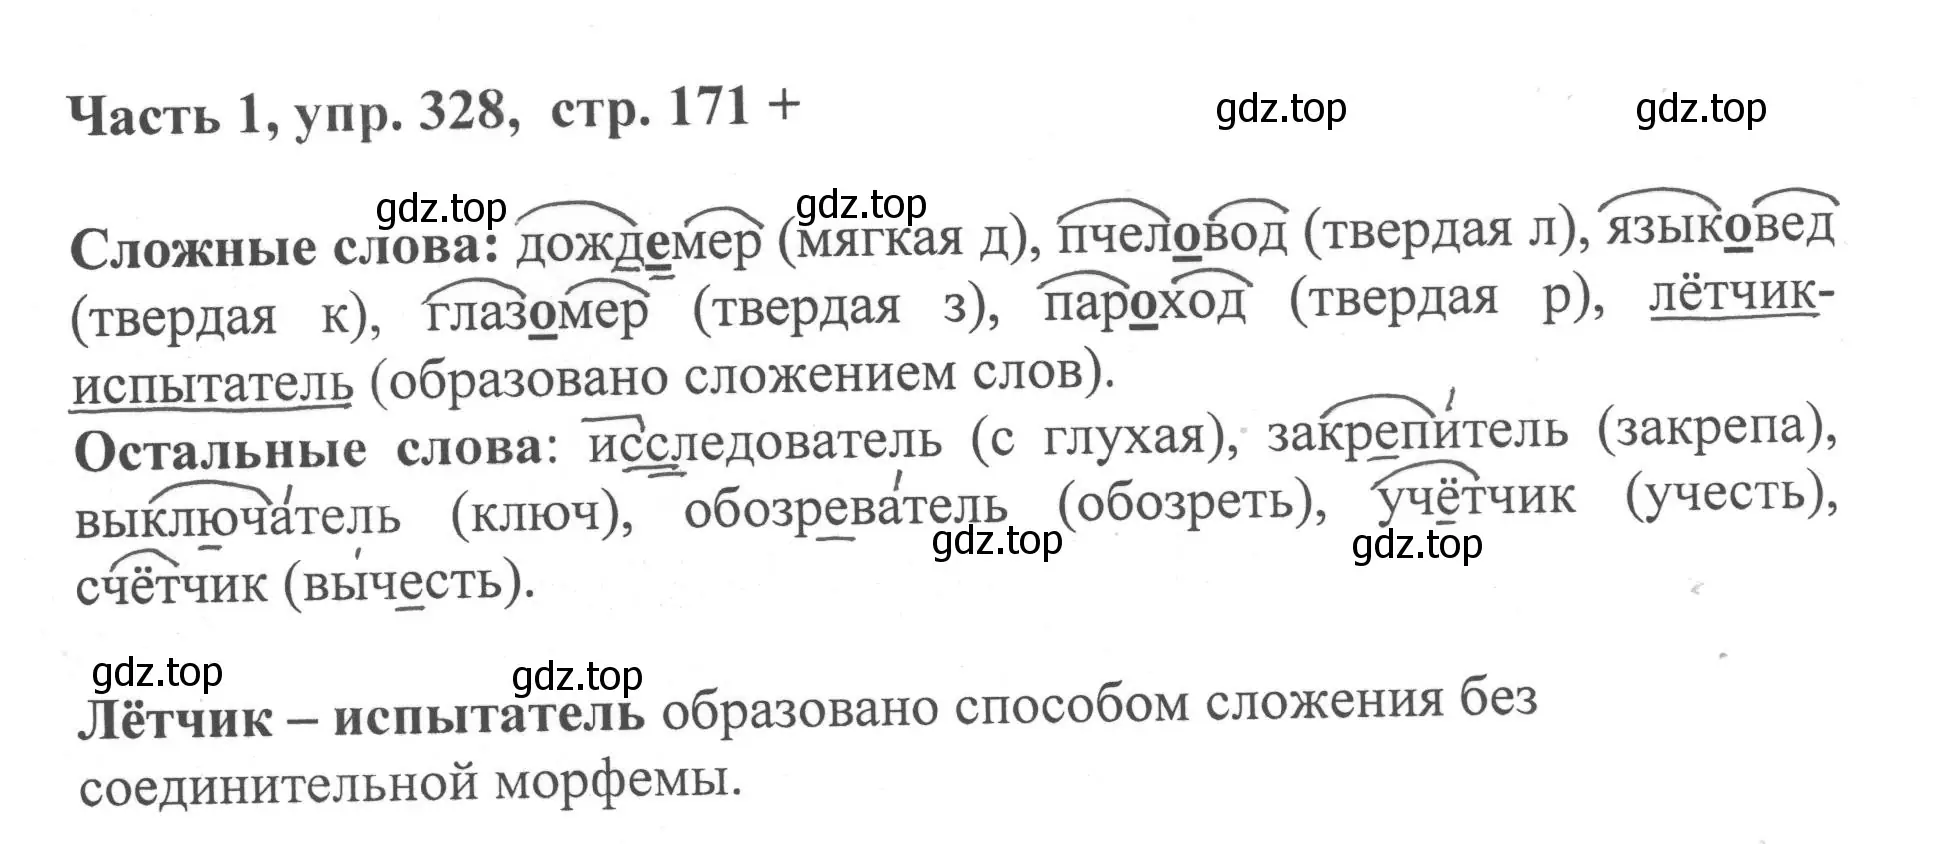 Решение номер 328 (страница 171) гдз по русскому языку 6 класс Баранов, Ладыженская, учебник 1 часть